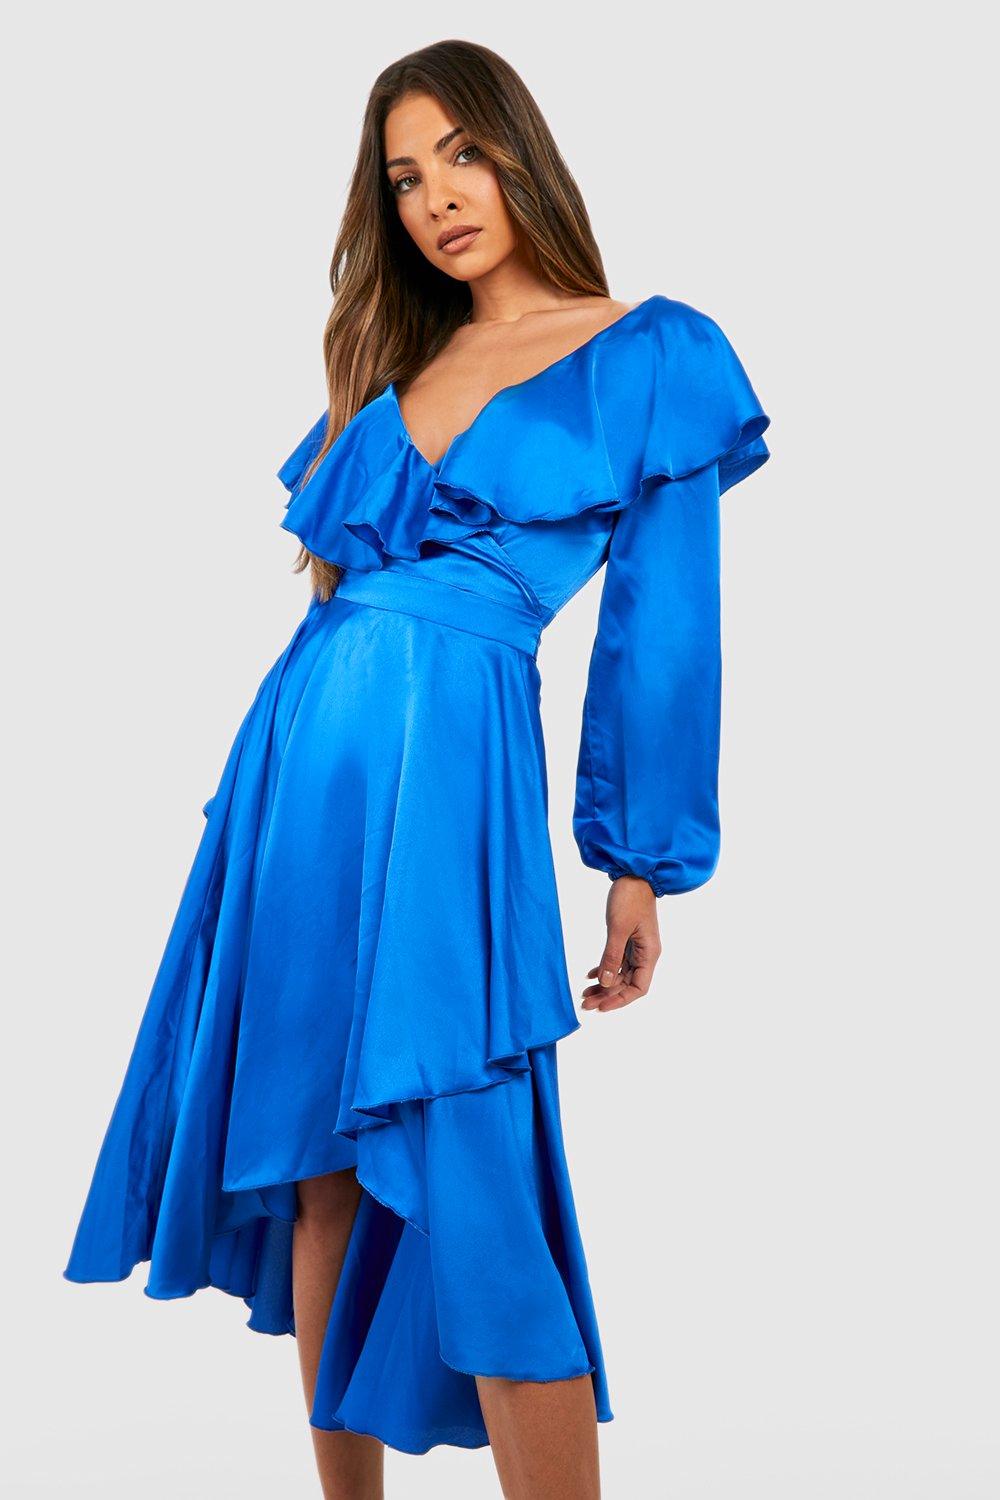 Vintage Evening Dresses, Vintage Formal Dresses Womens Long Sleeve Satin Ruffle Wrap Skater Dress - Blue - 10 $50.00 AT vintagedancer.com